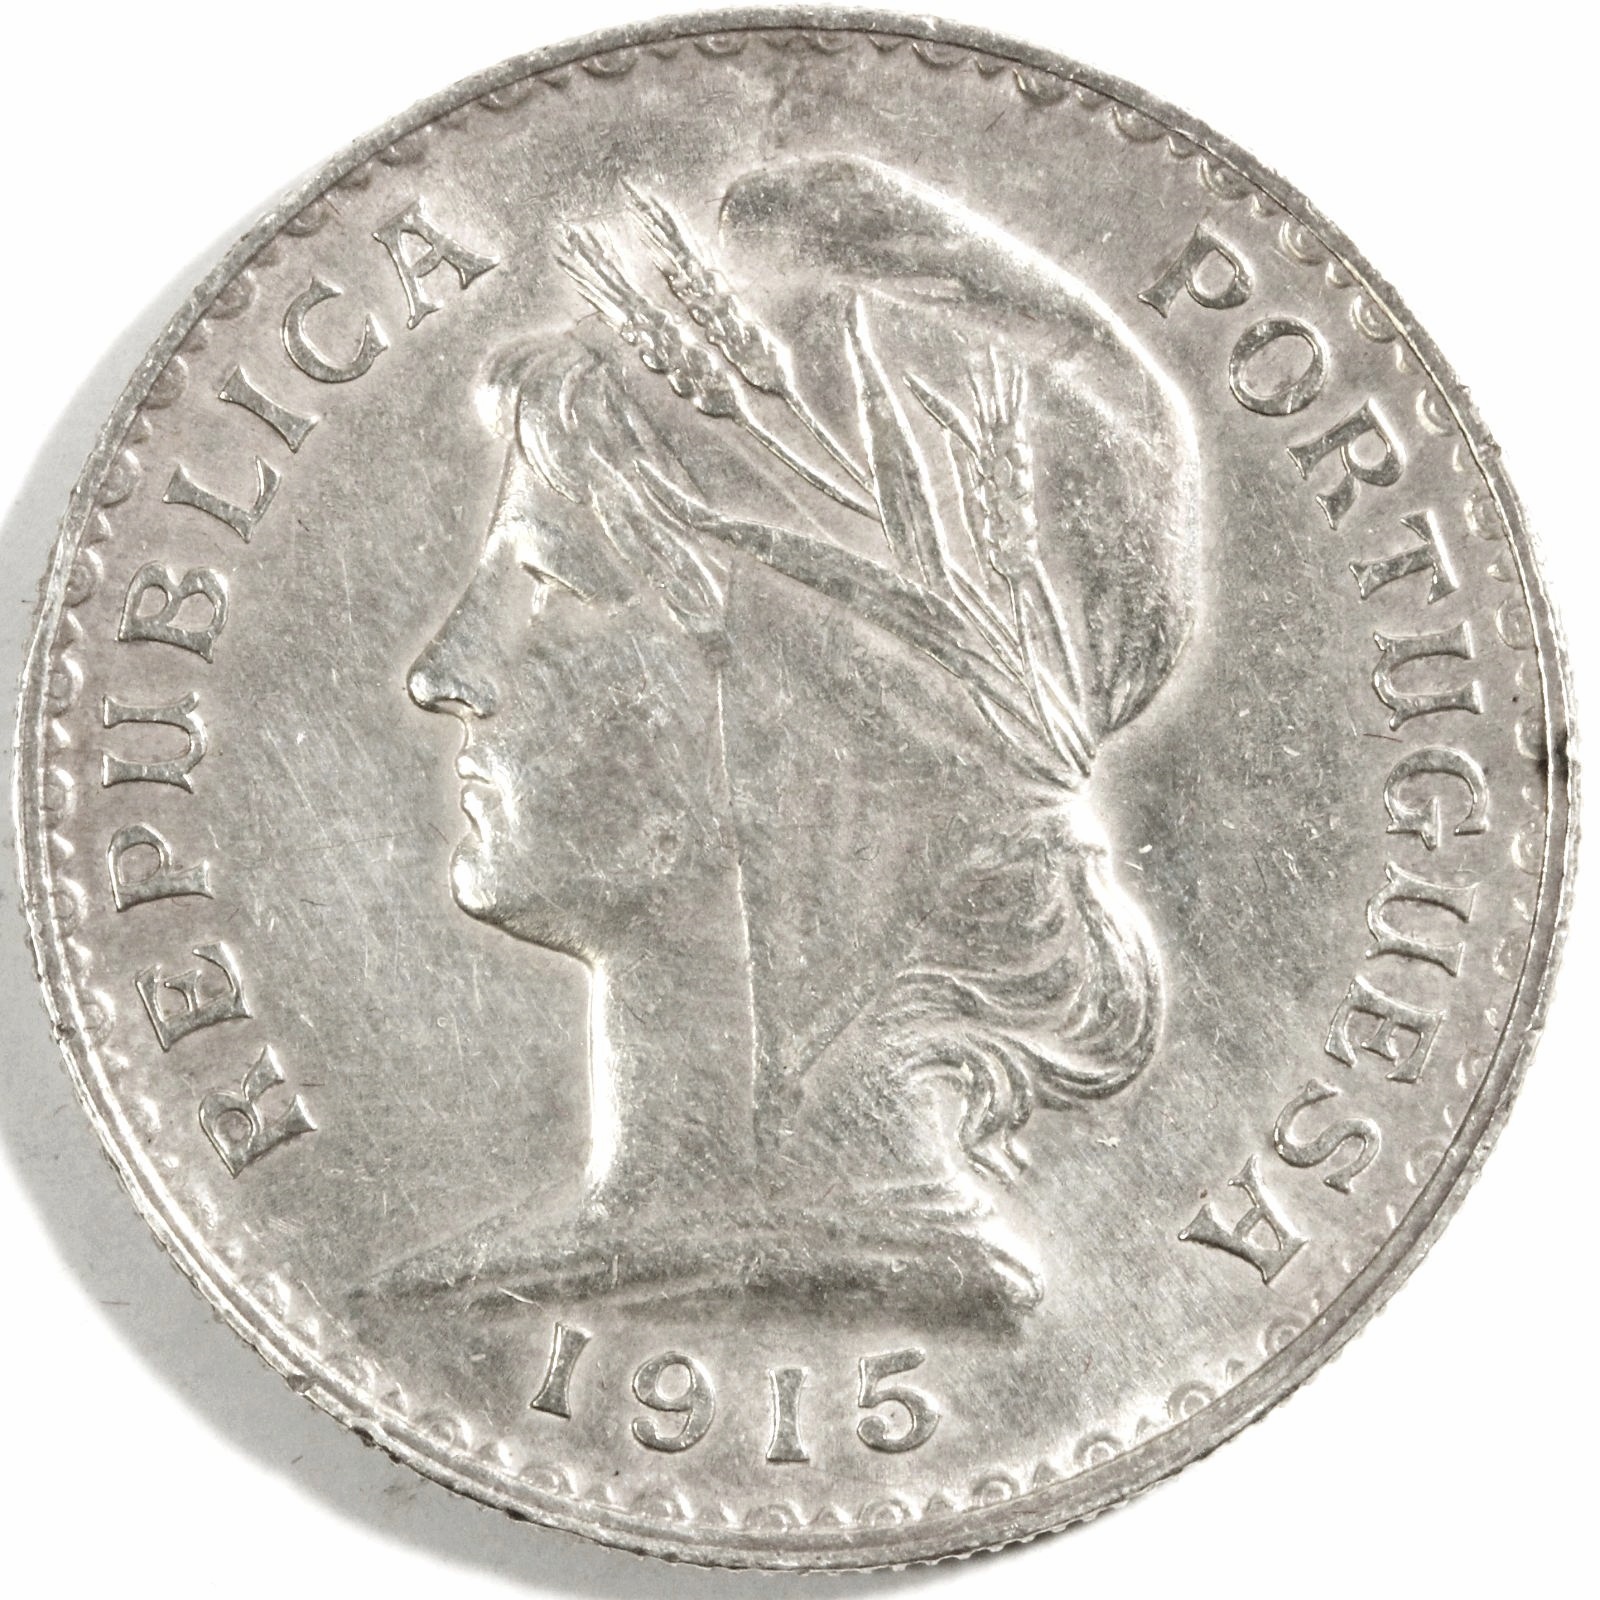 1930ポルトガル1エスカドロット 銀貨-